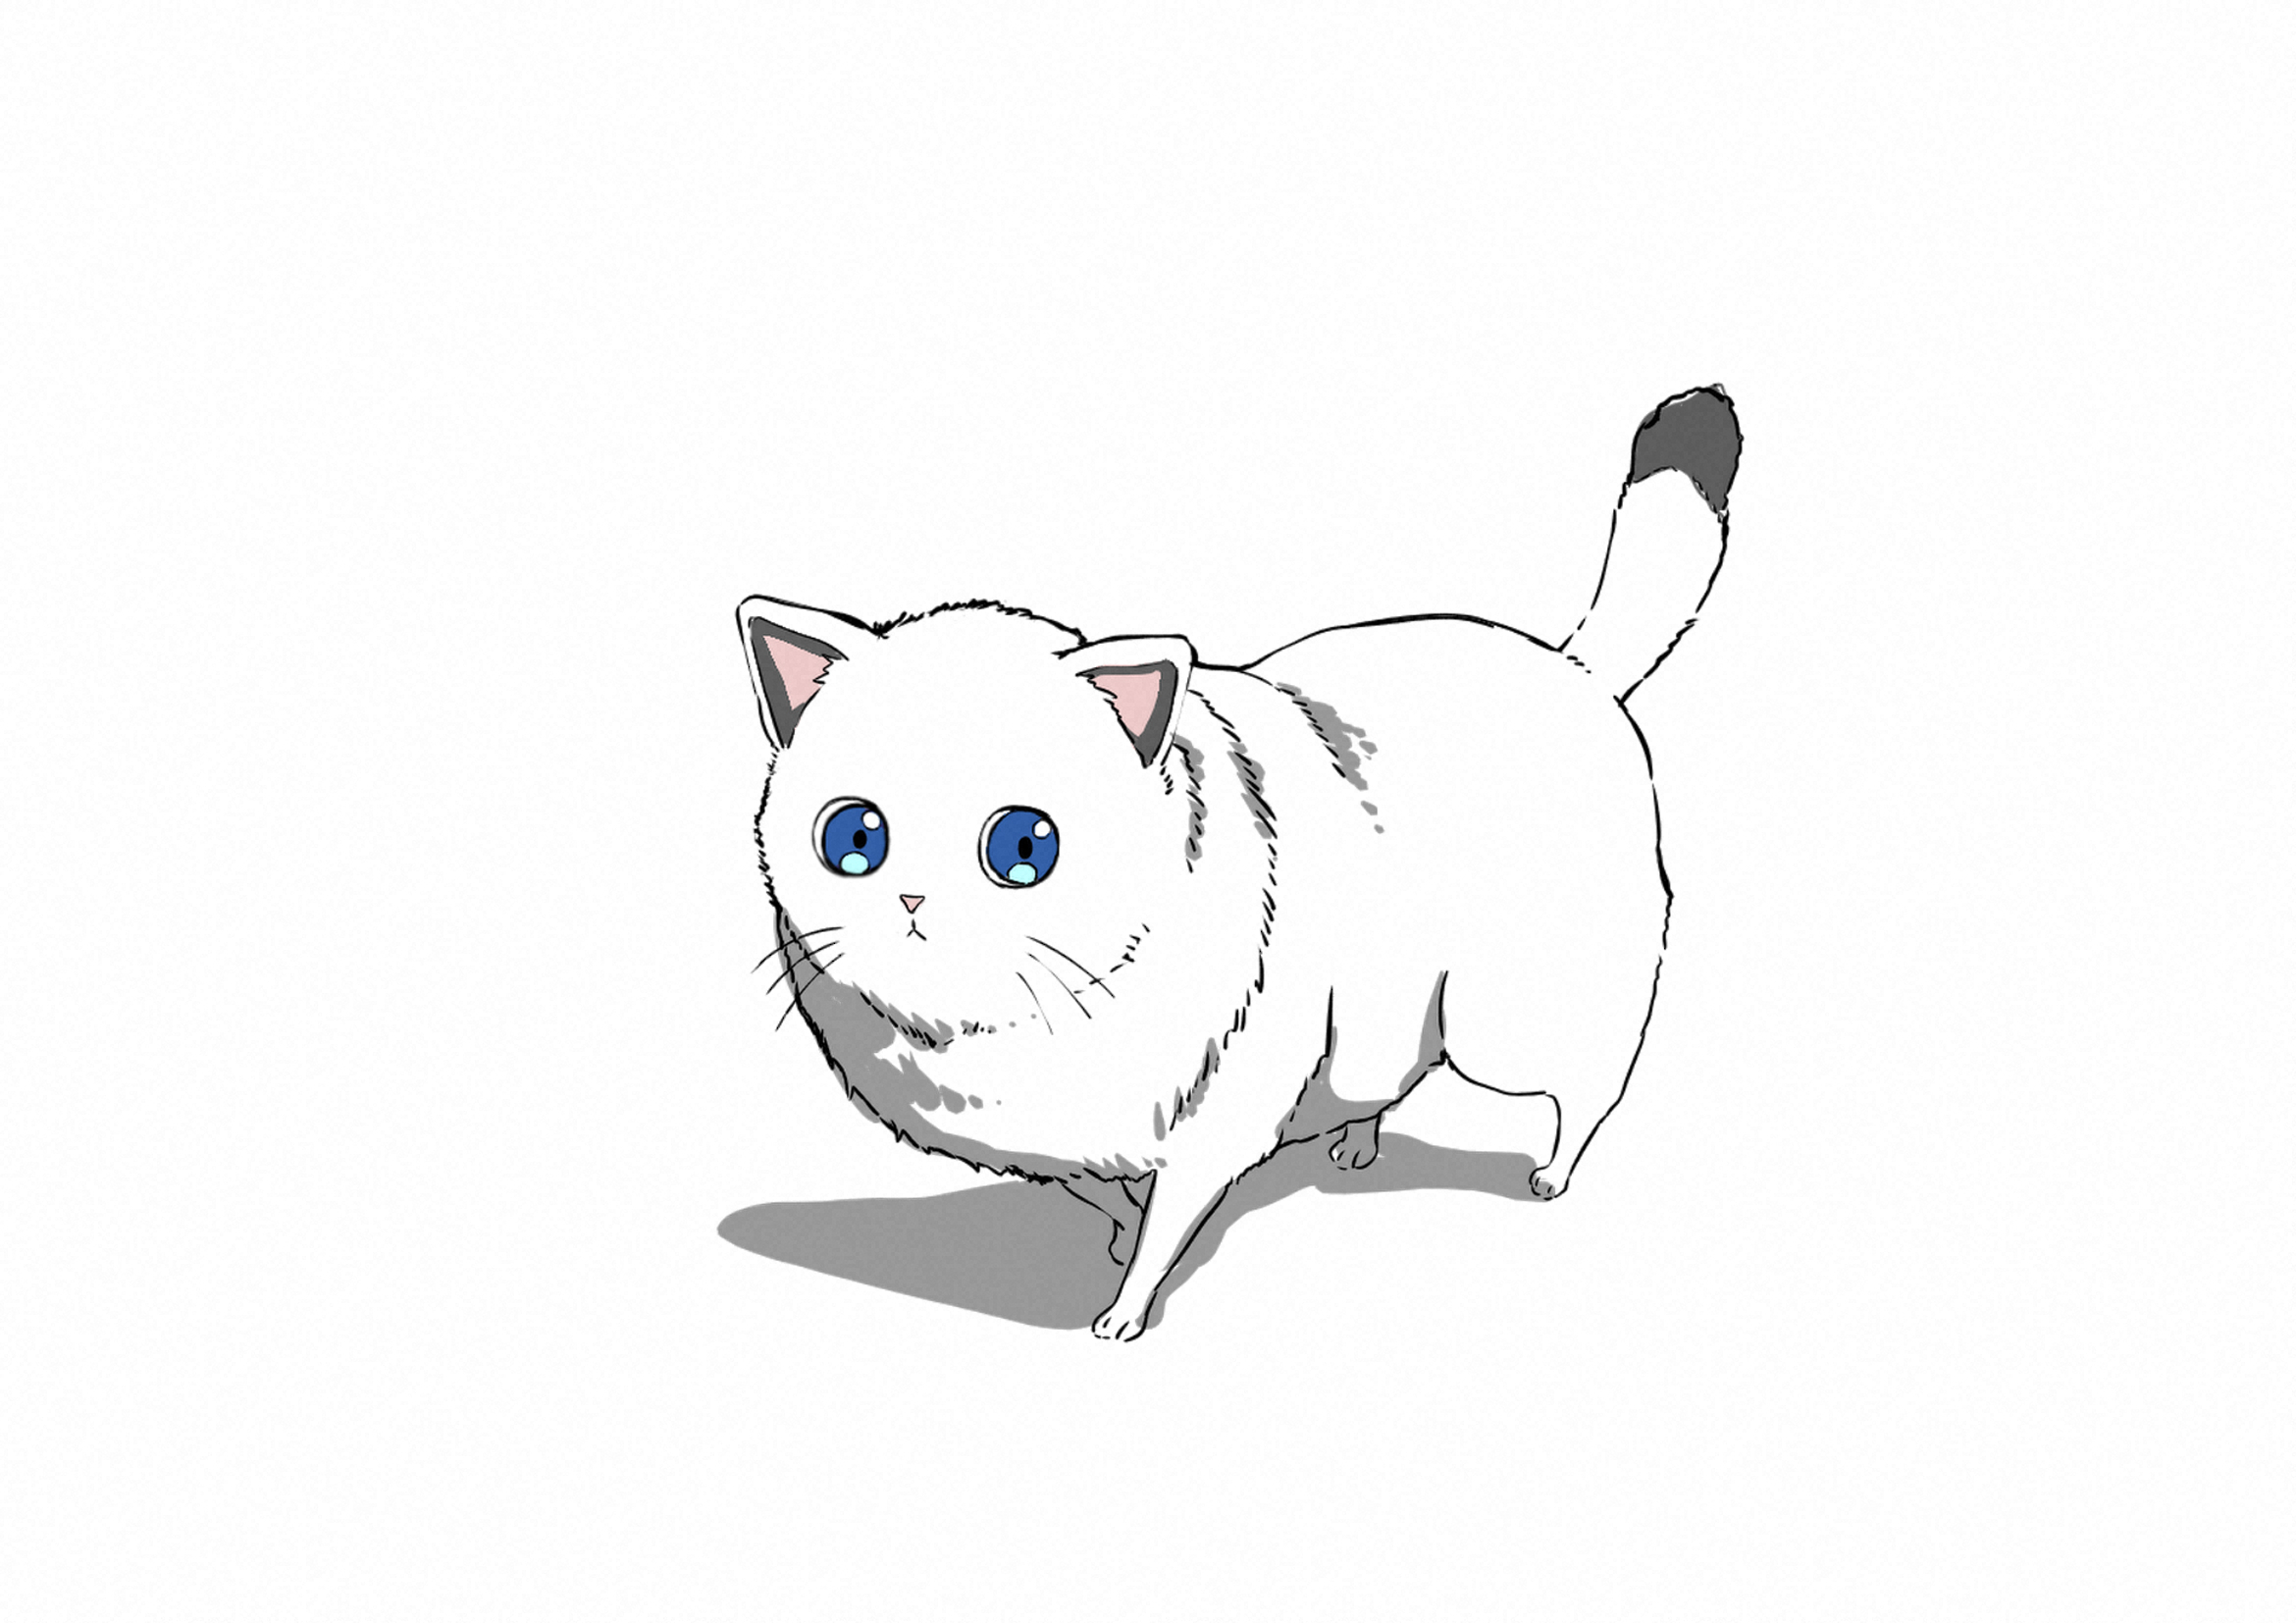 公開された「Nekocha the sleepy cat」のキャラクター「Nekocha」